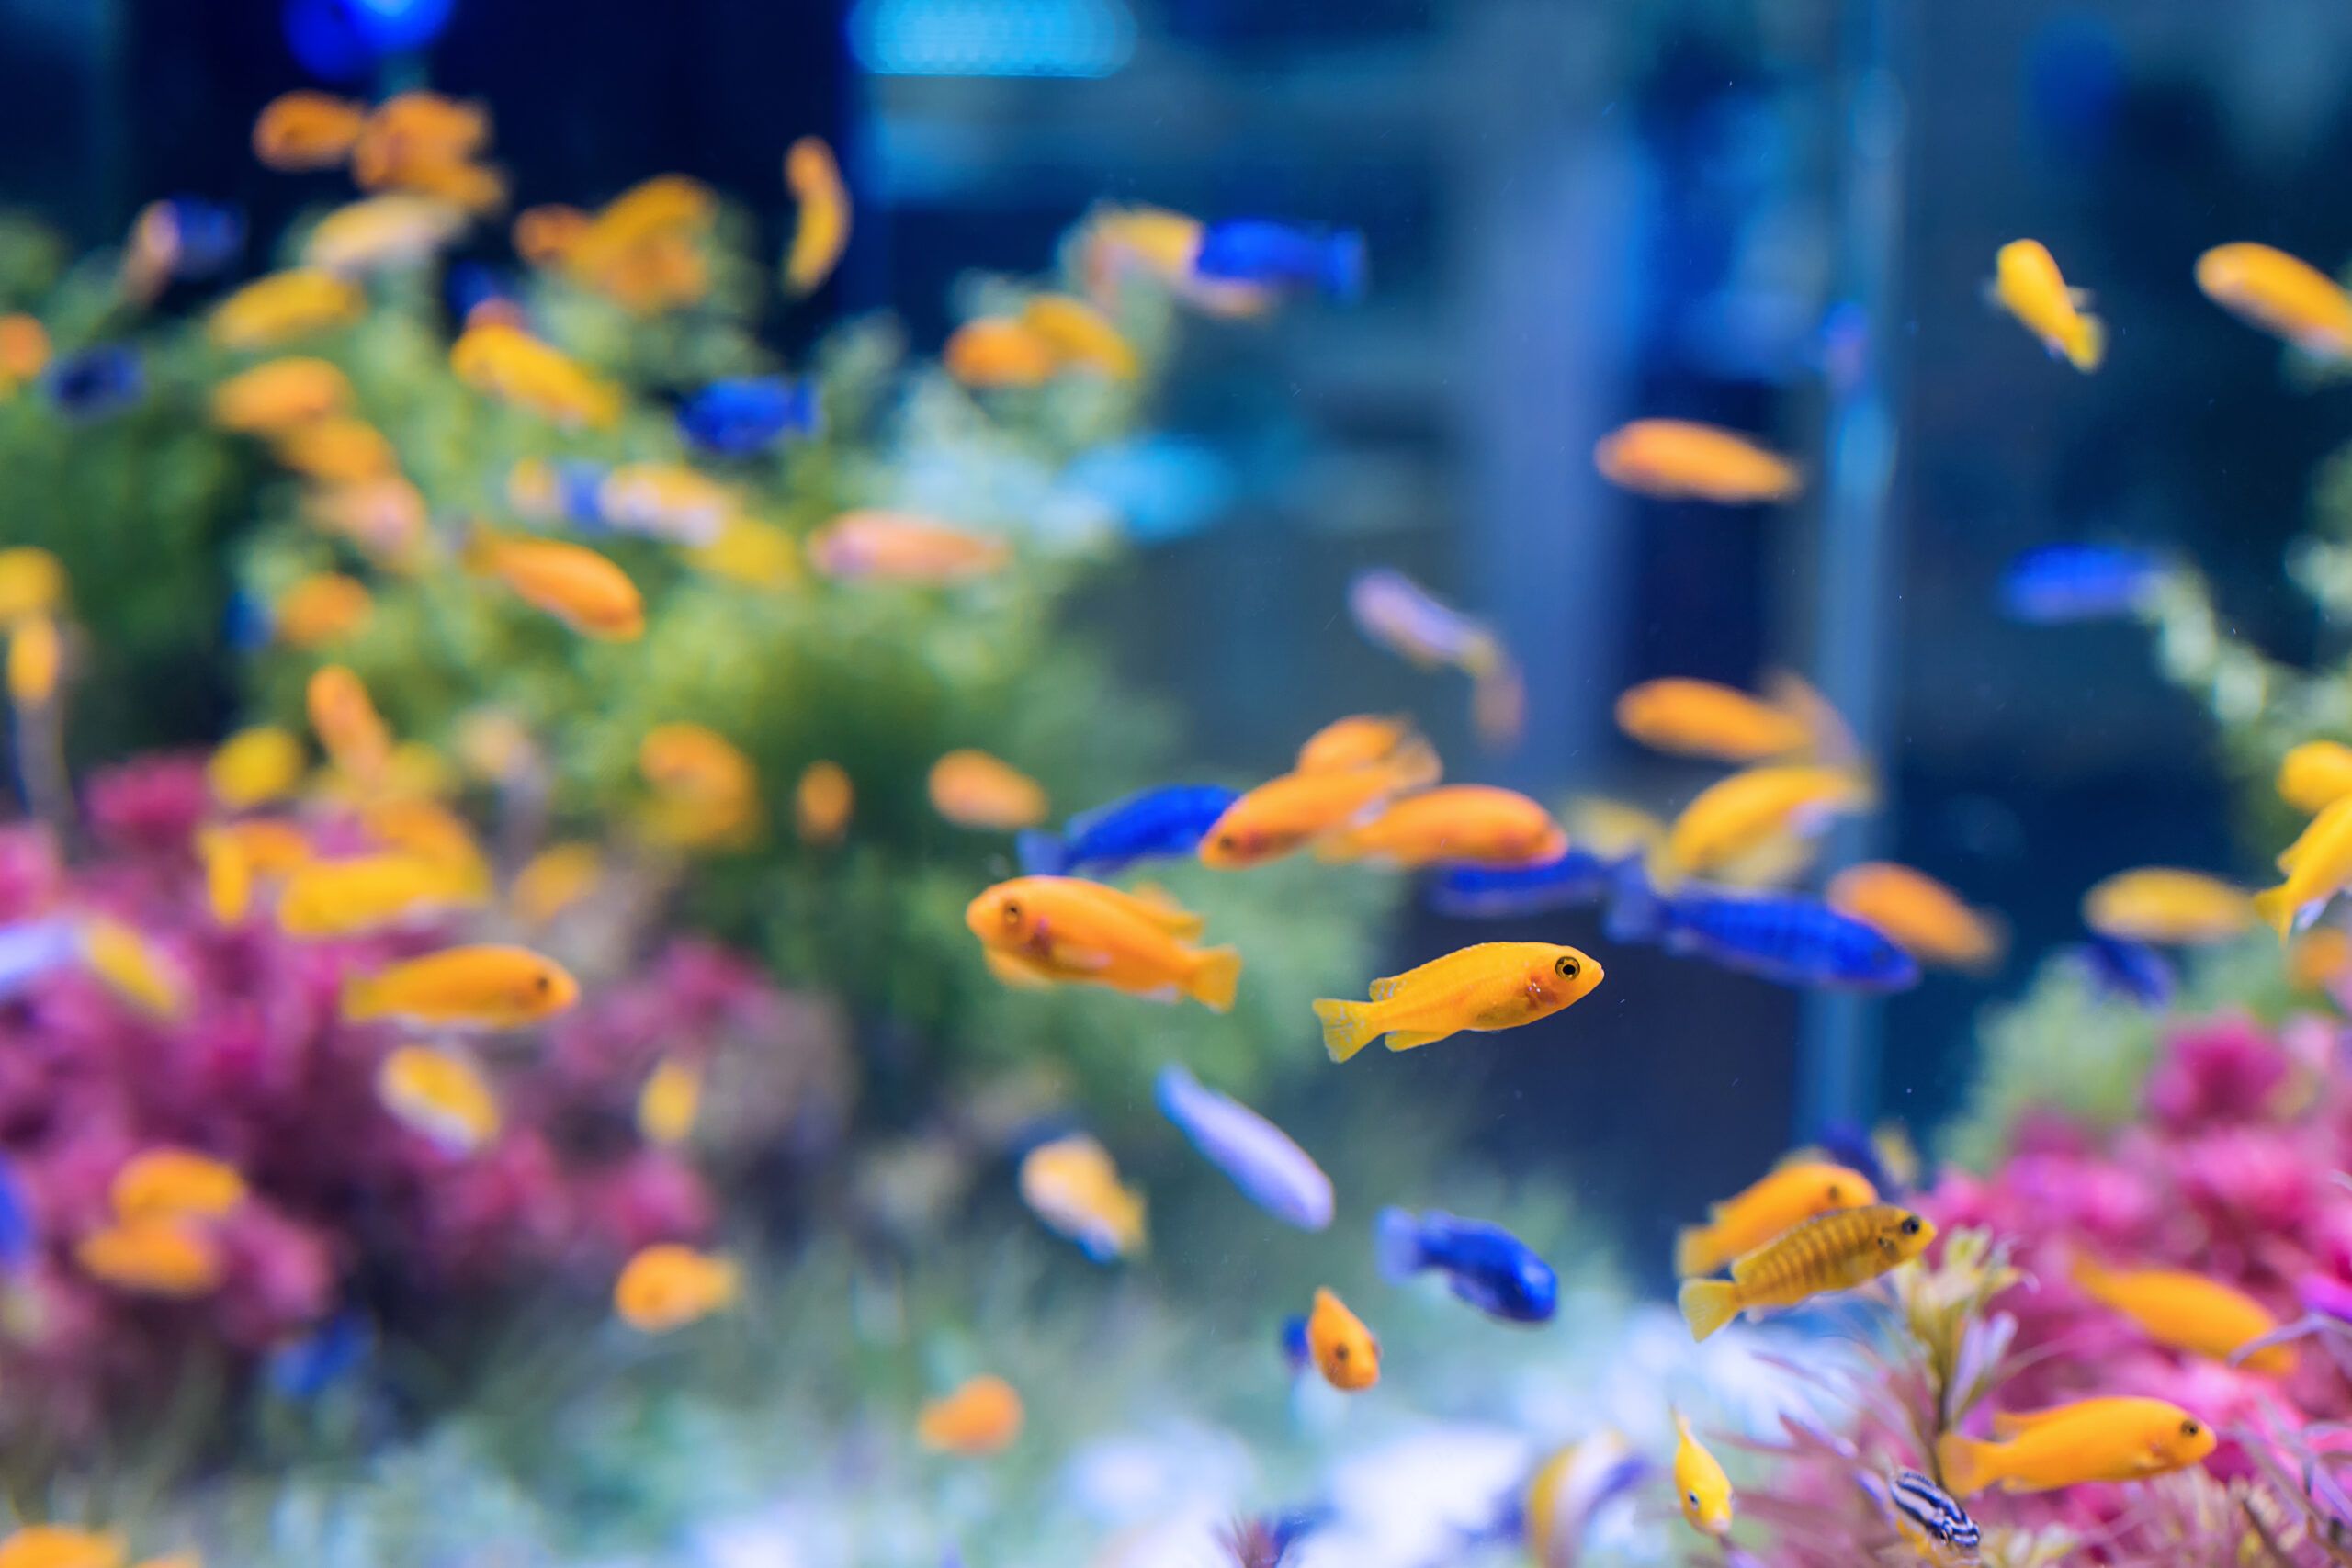 Администрация Красносельского района покупает аквариум и рыбок за счет бюджета Петербурга